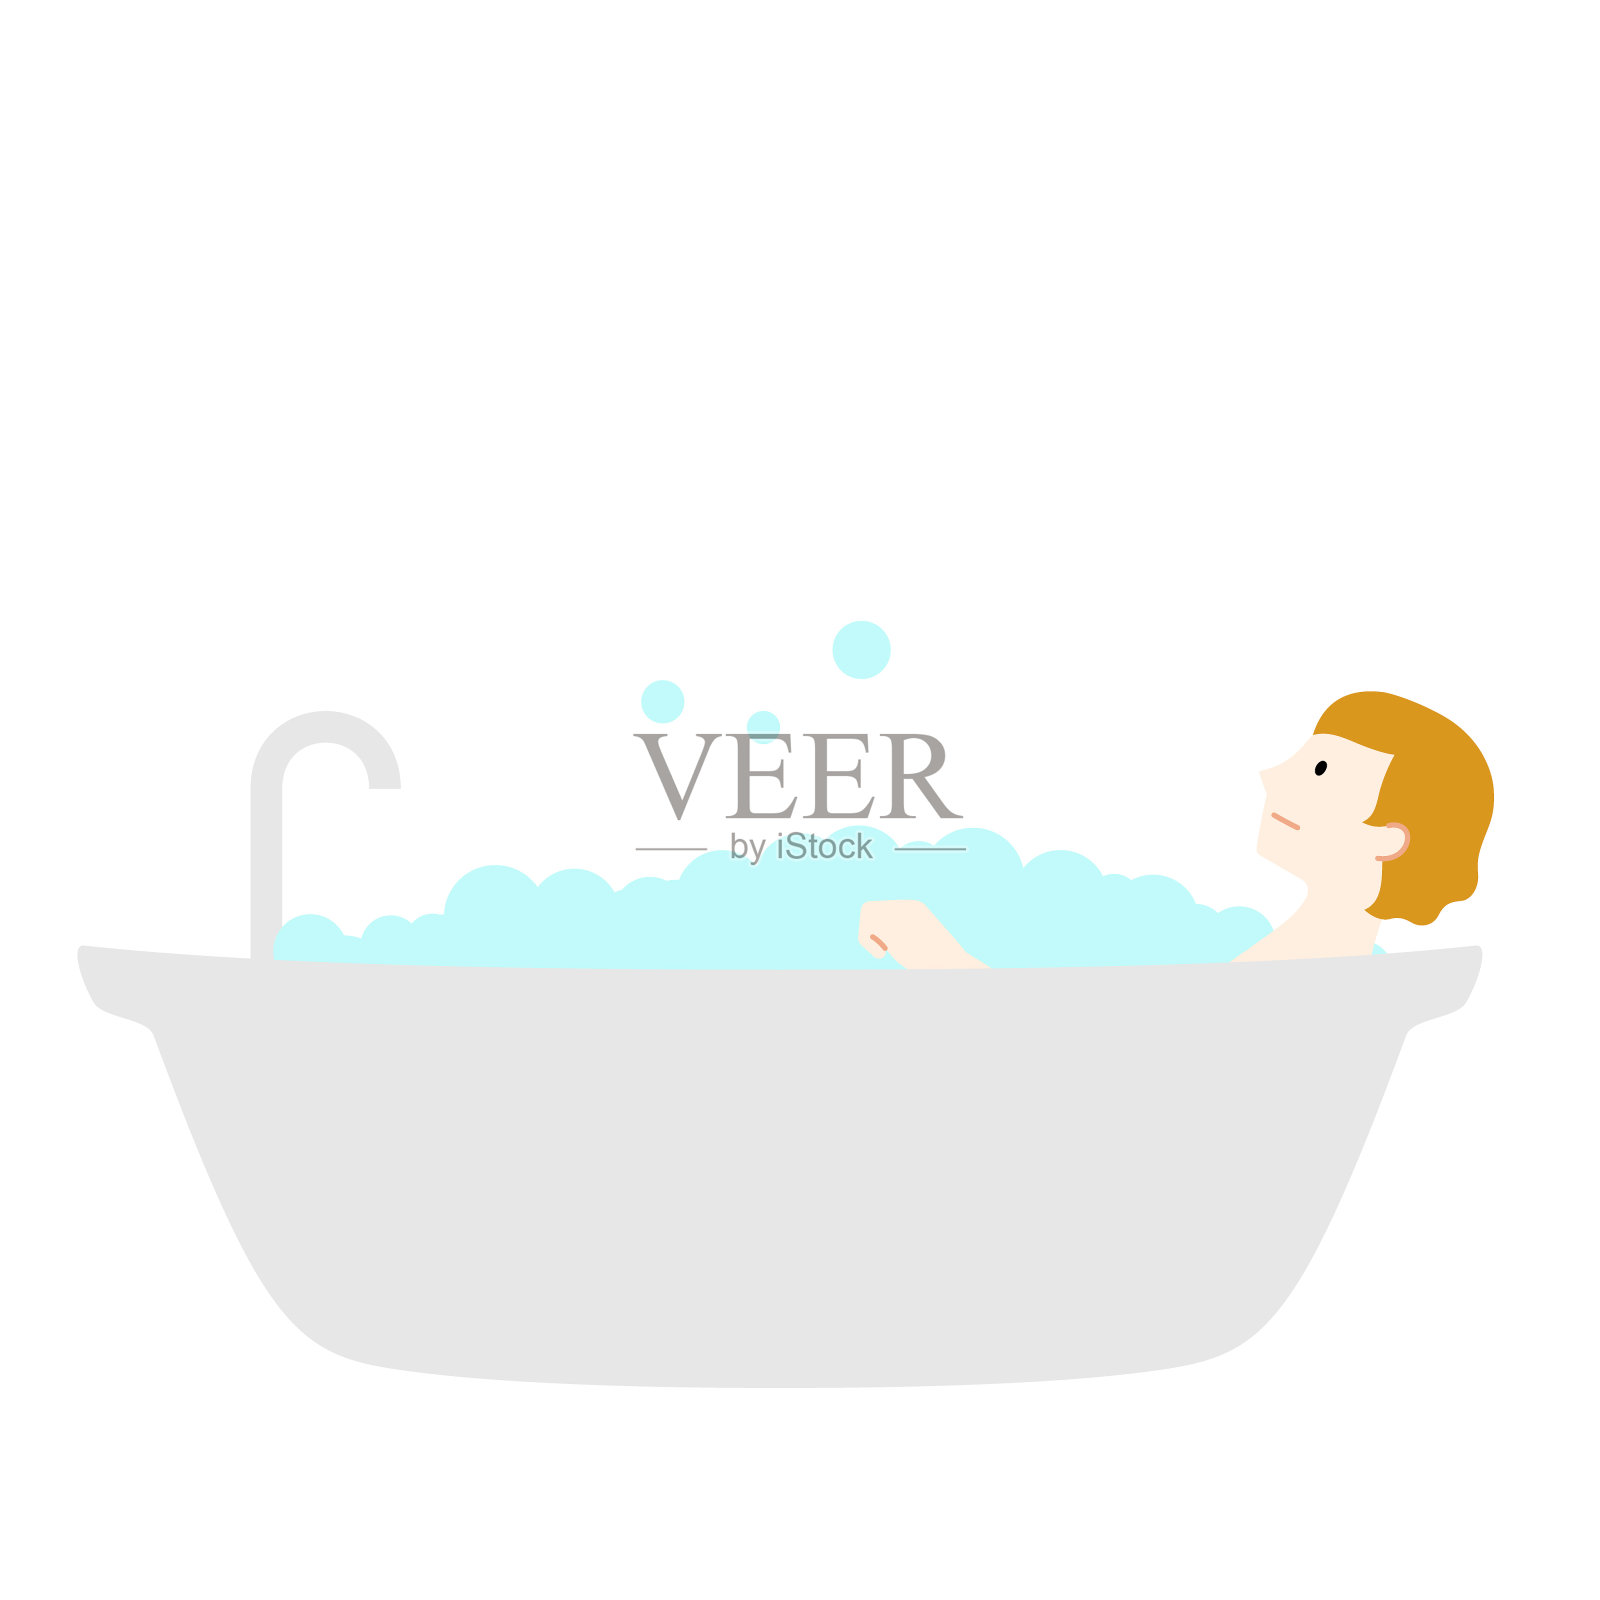 美女躺在浴缸洗泡泡浴喝雞尾酒圖片素材-JPG圖片尺寸6720 × 4480px-高清圖案501402922-zh.lovepik.com